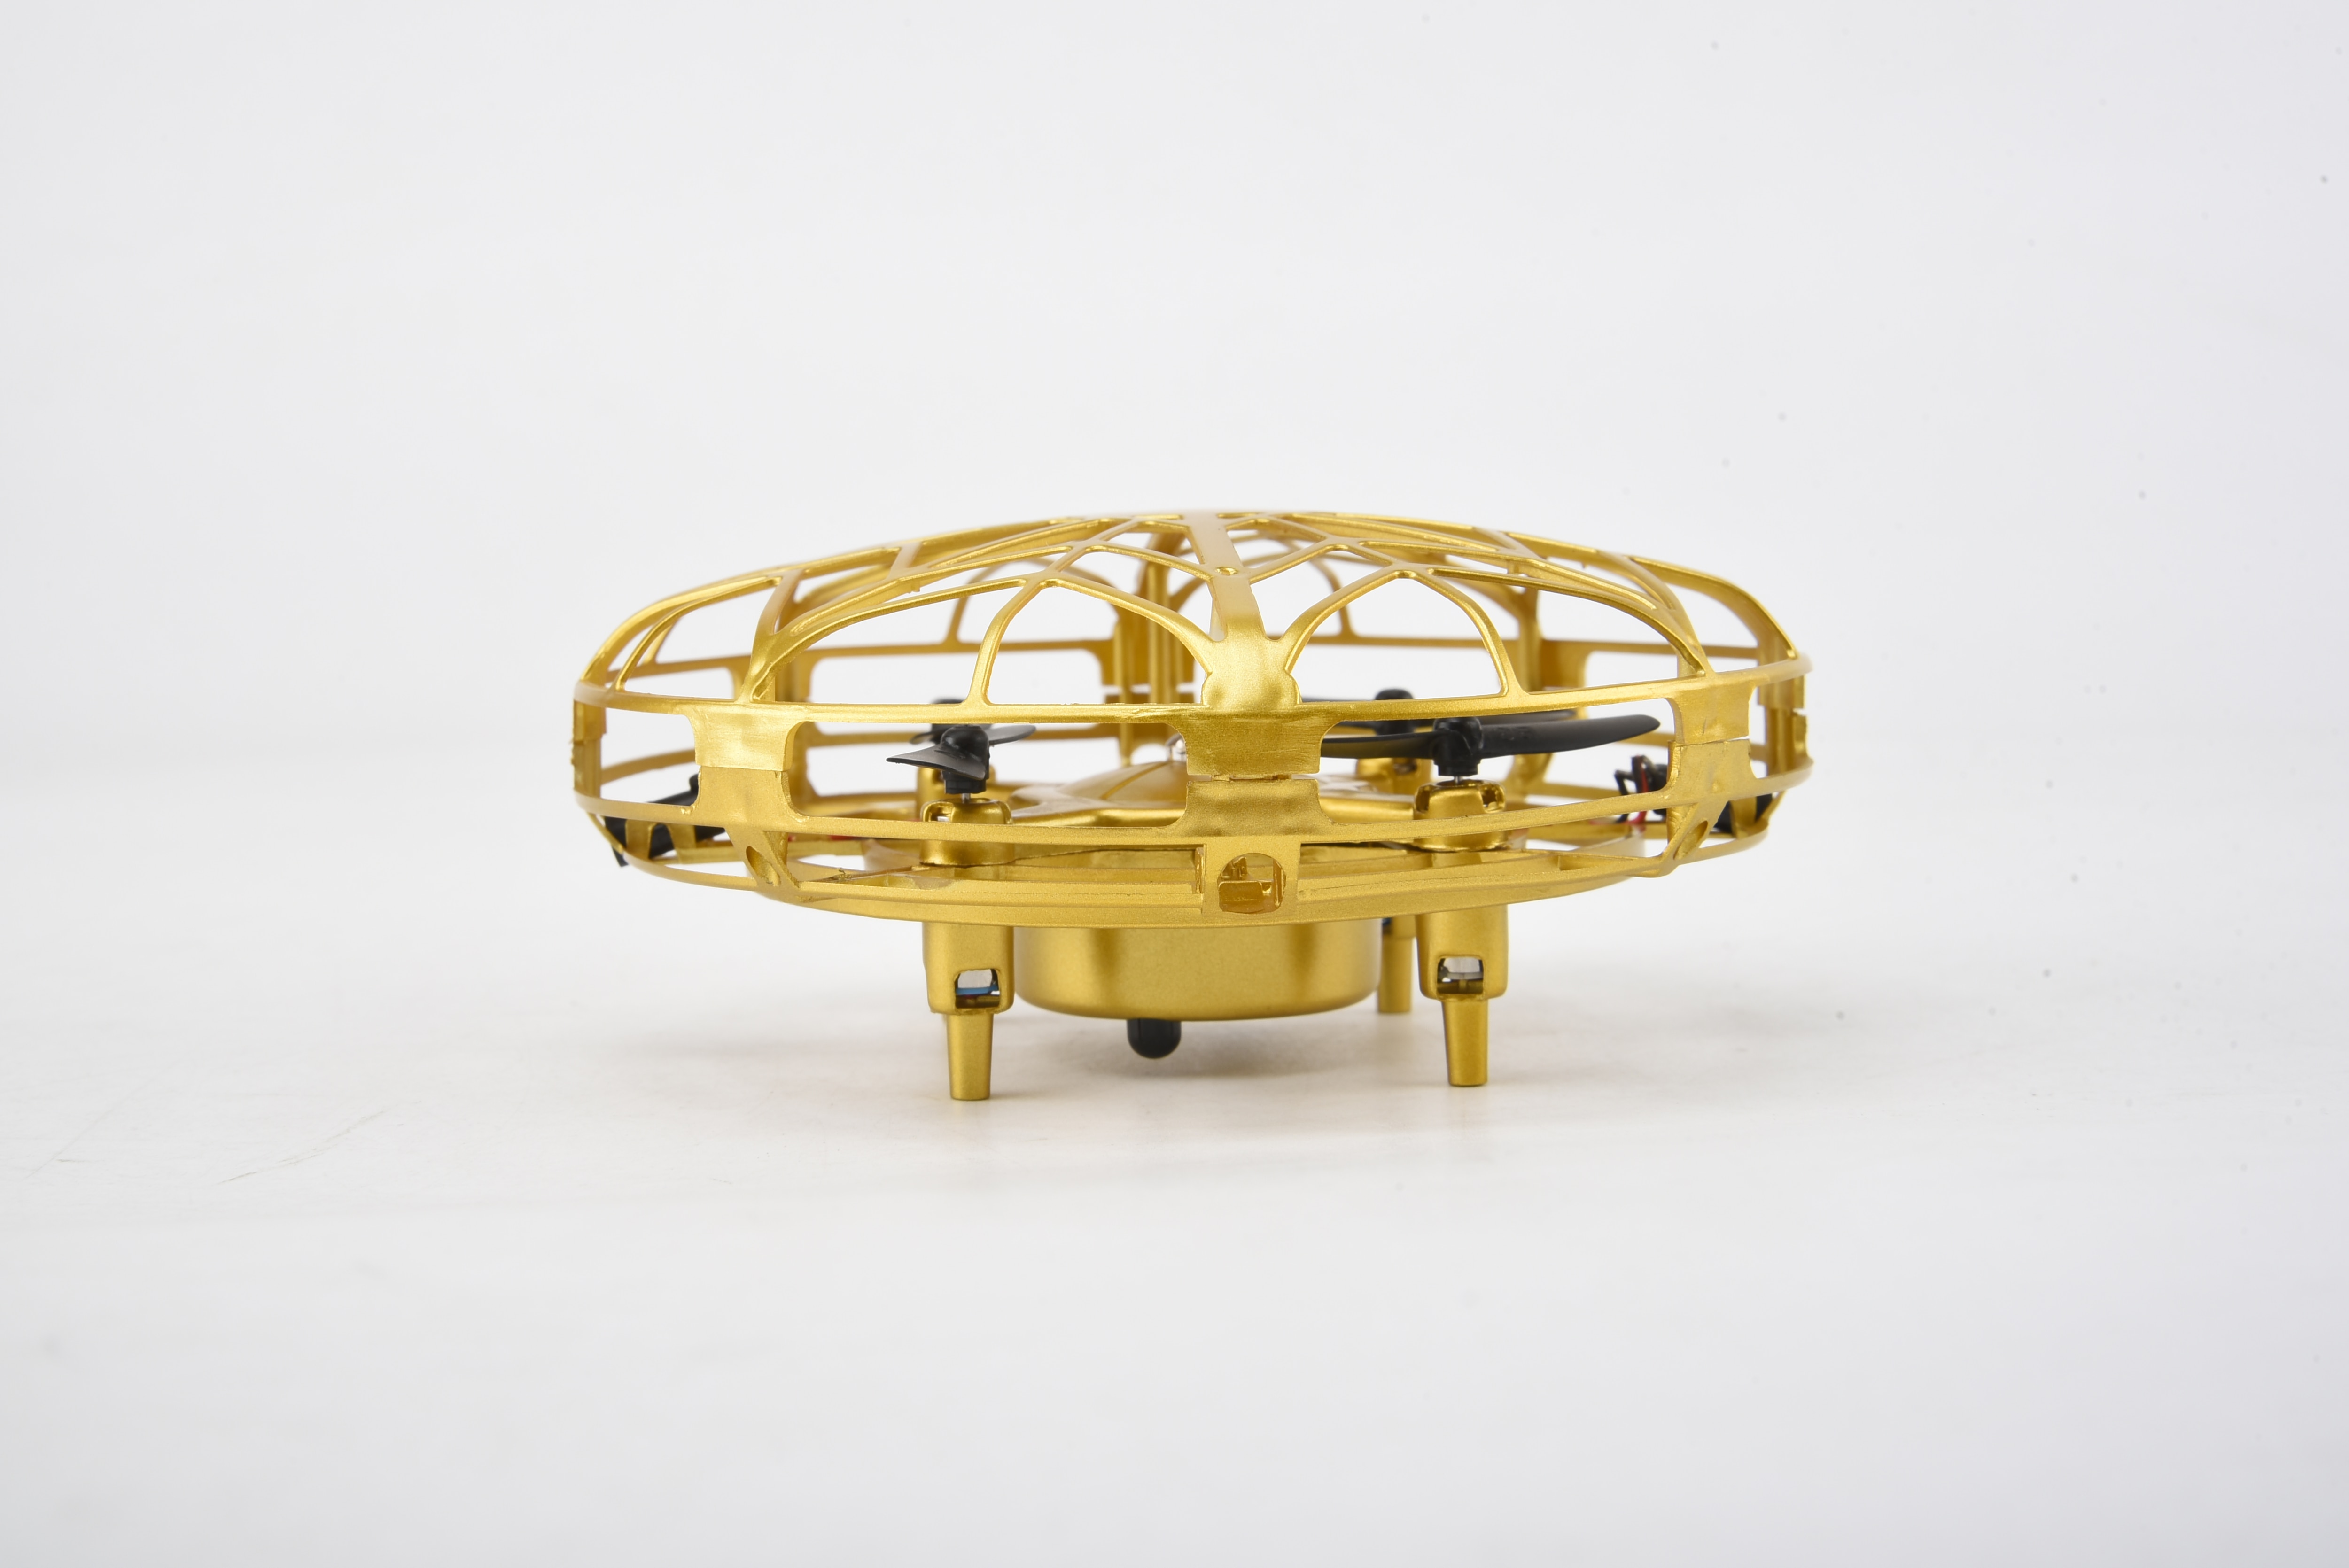 Smart Drone UFO goud